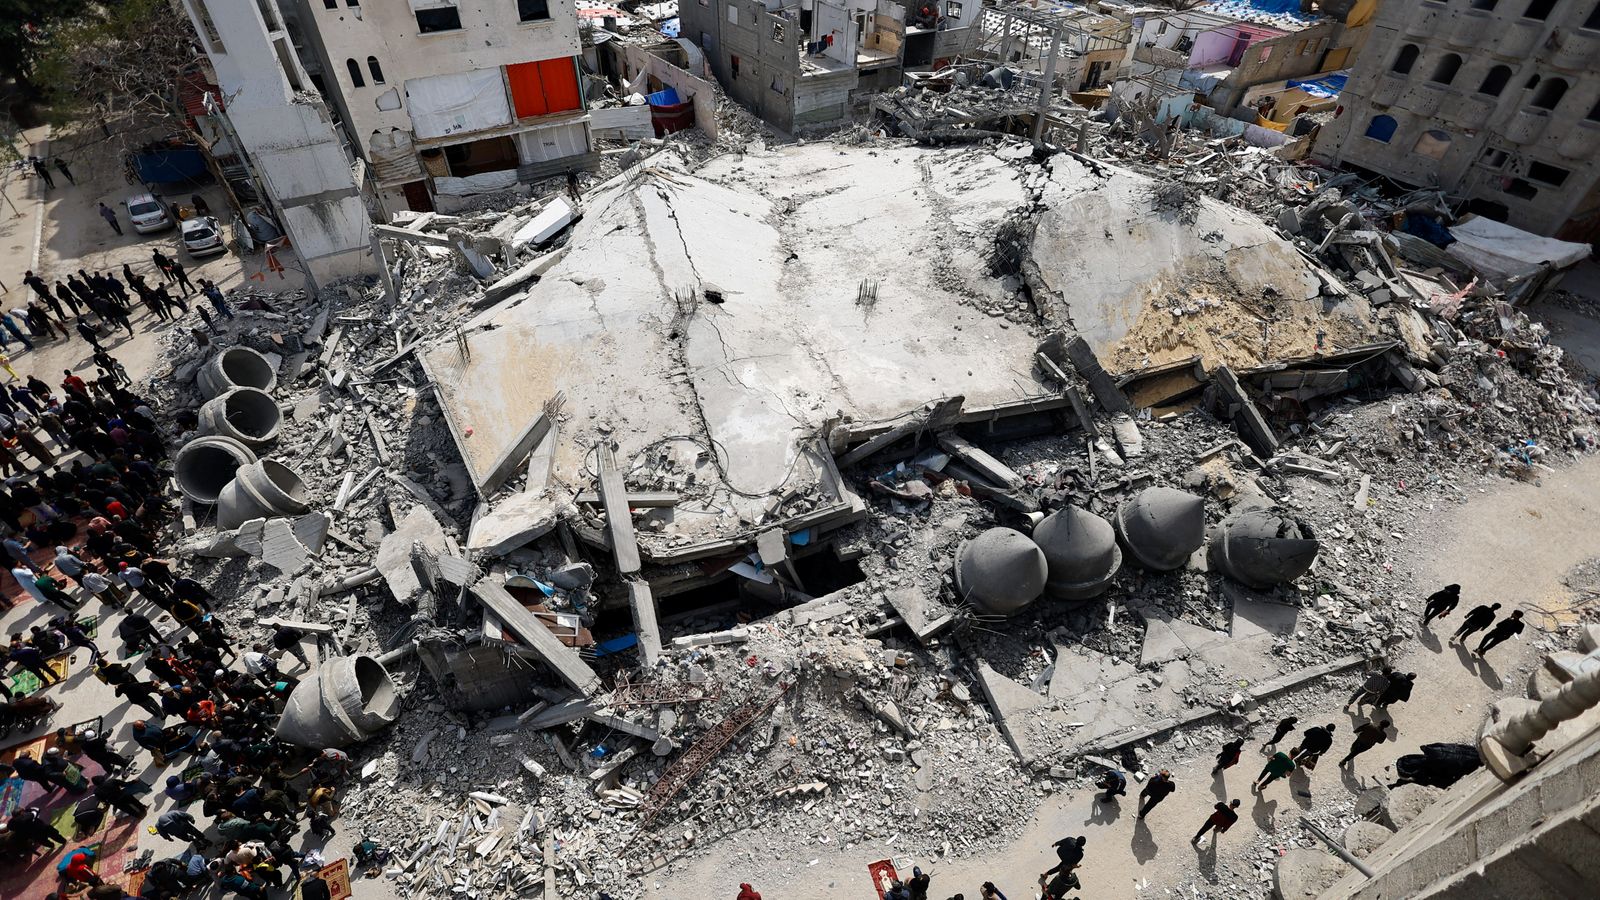 الأحدث في الشرق الأوسط: الولايات المتحدة تسقط مساعدات جوية على غزة للمرة الأولى؛  تفاصيل تظهر بشأن العقبة الأخيرة أمام اتفاق وقف إطلاق النار |  اخبار العالم